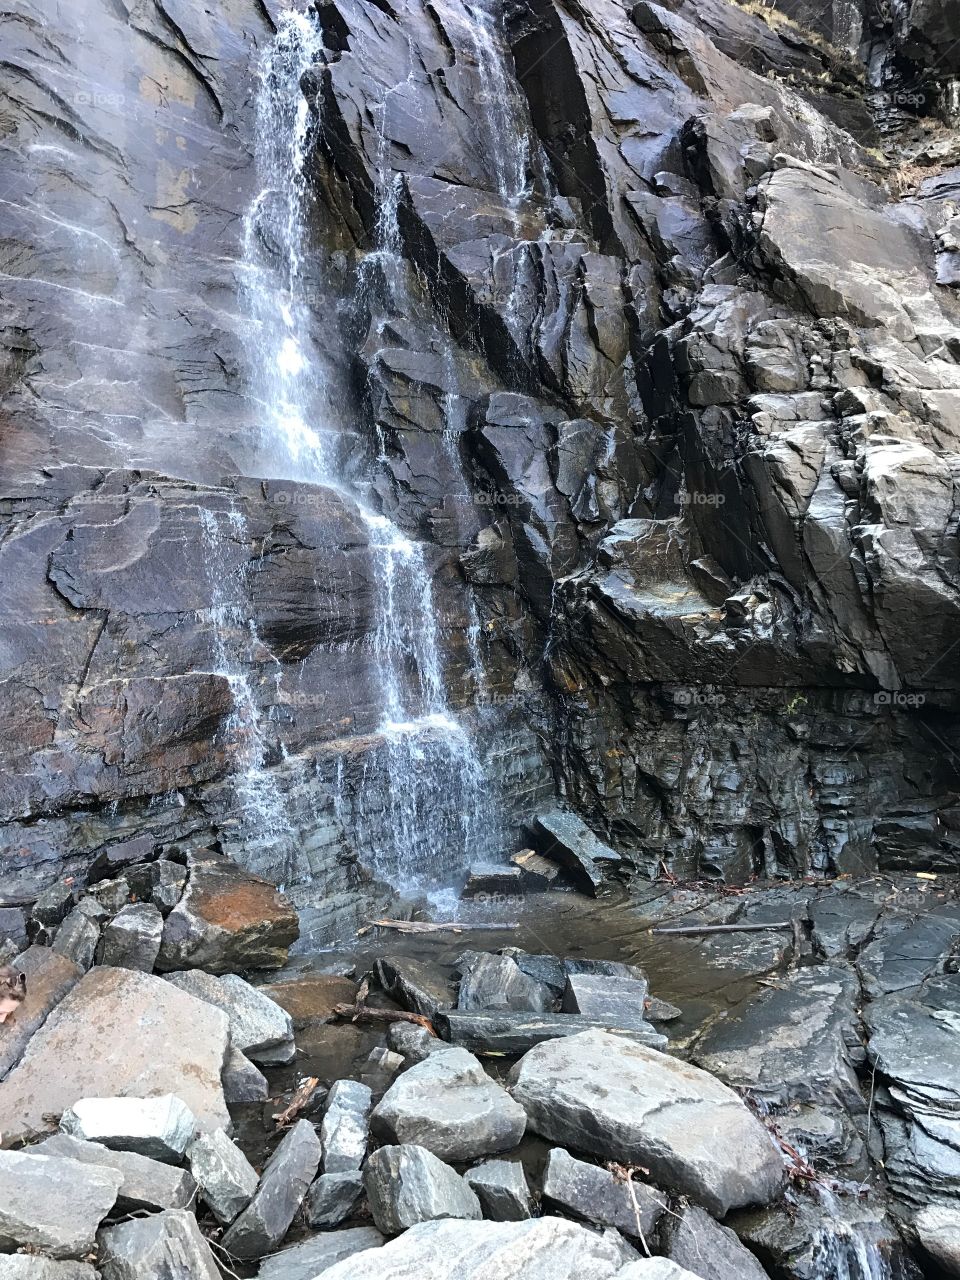 Waterfall at Chimney Rock